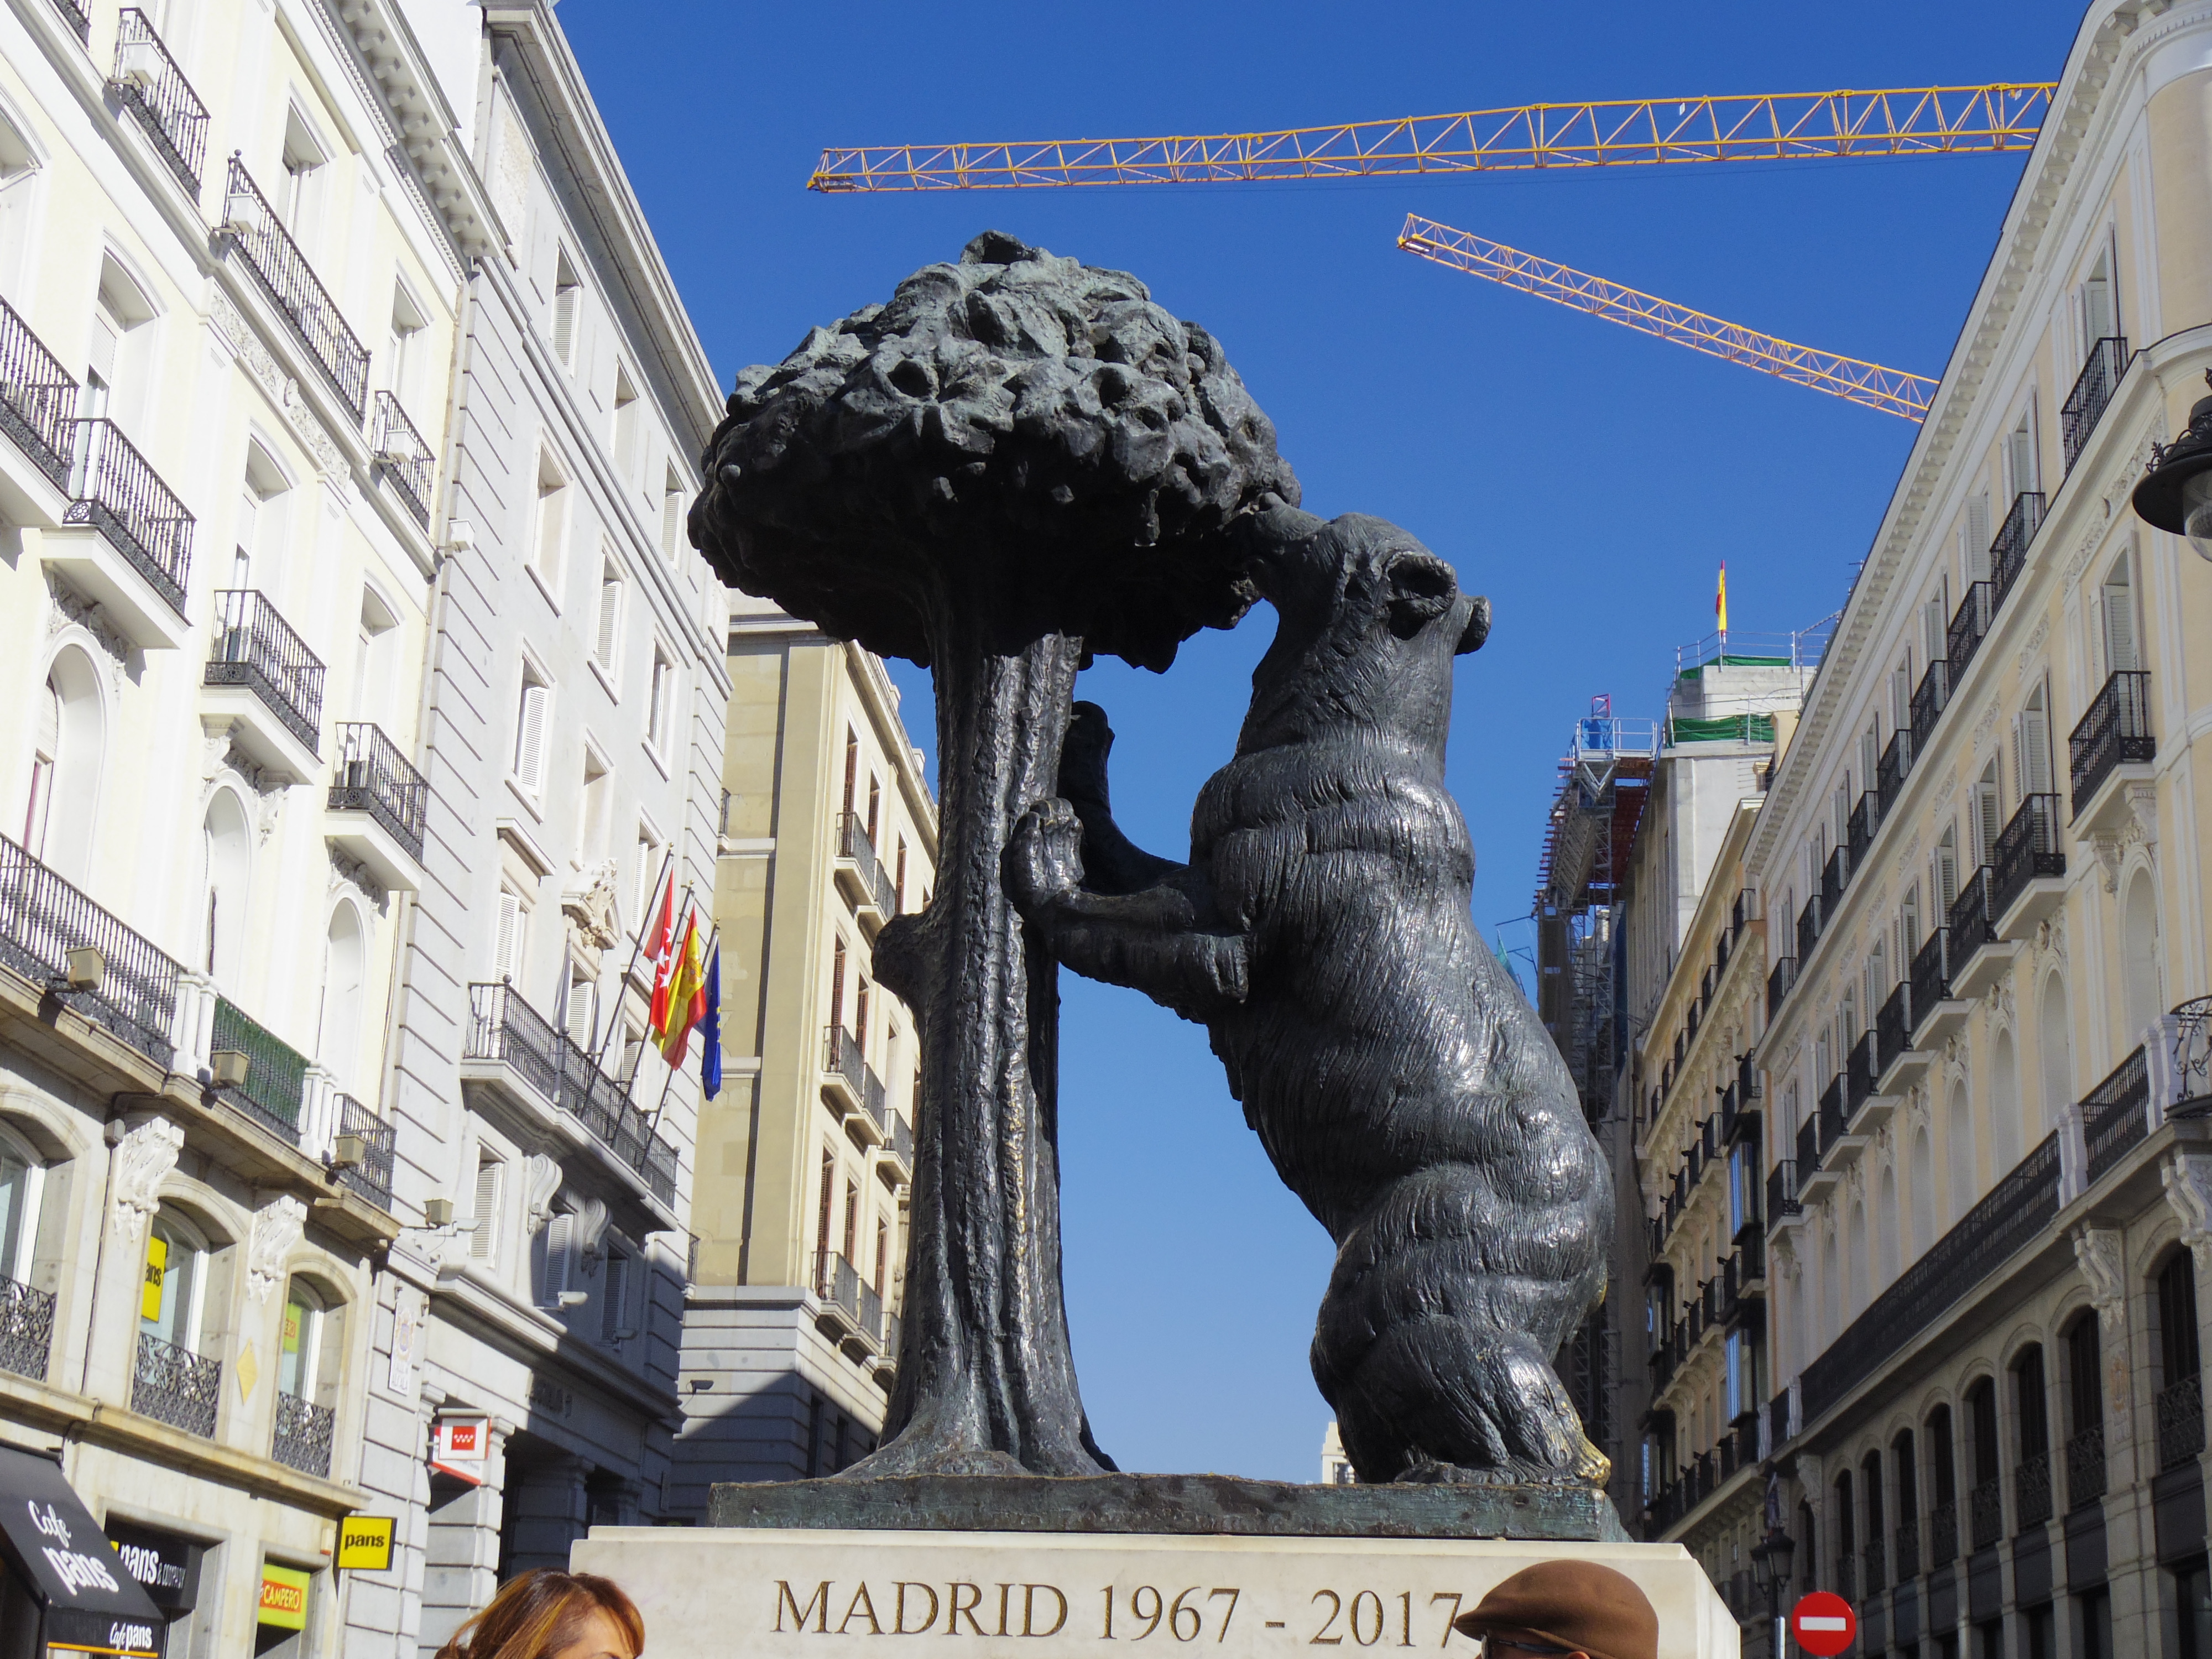 マドリードからリスボンへバス移動。スペインのバスクオリティが高くて快適だった。